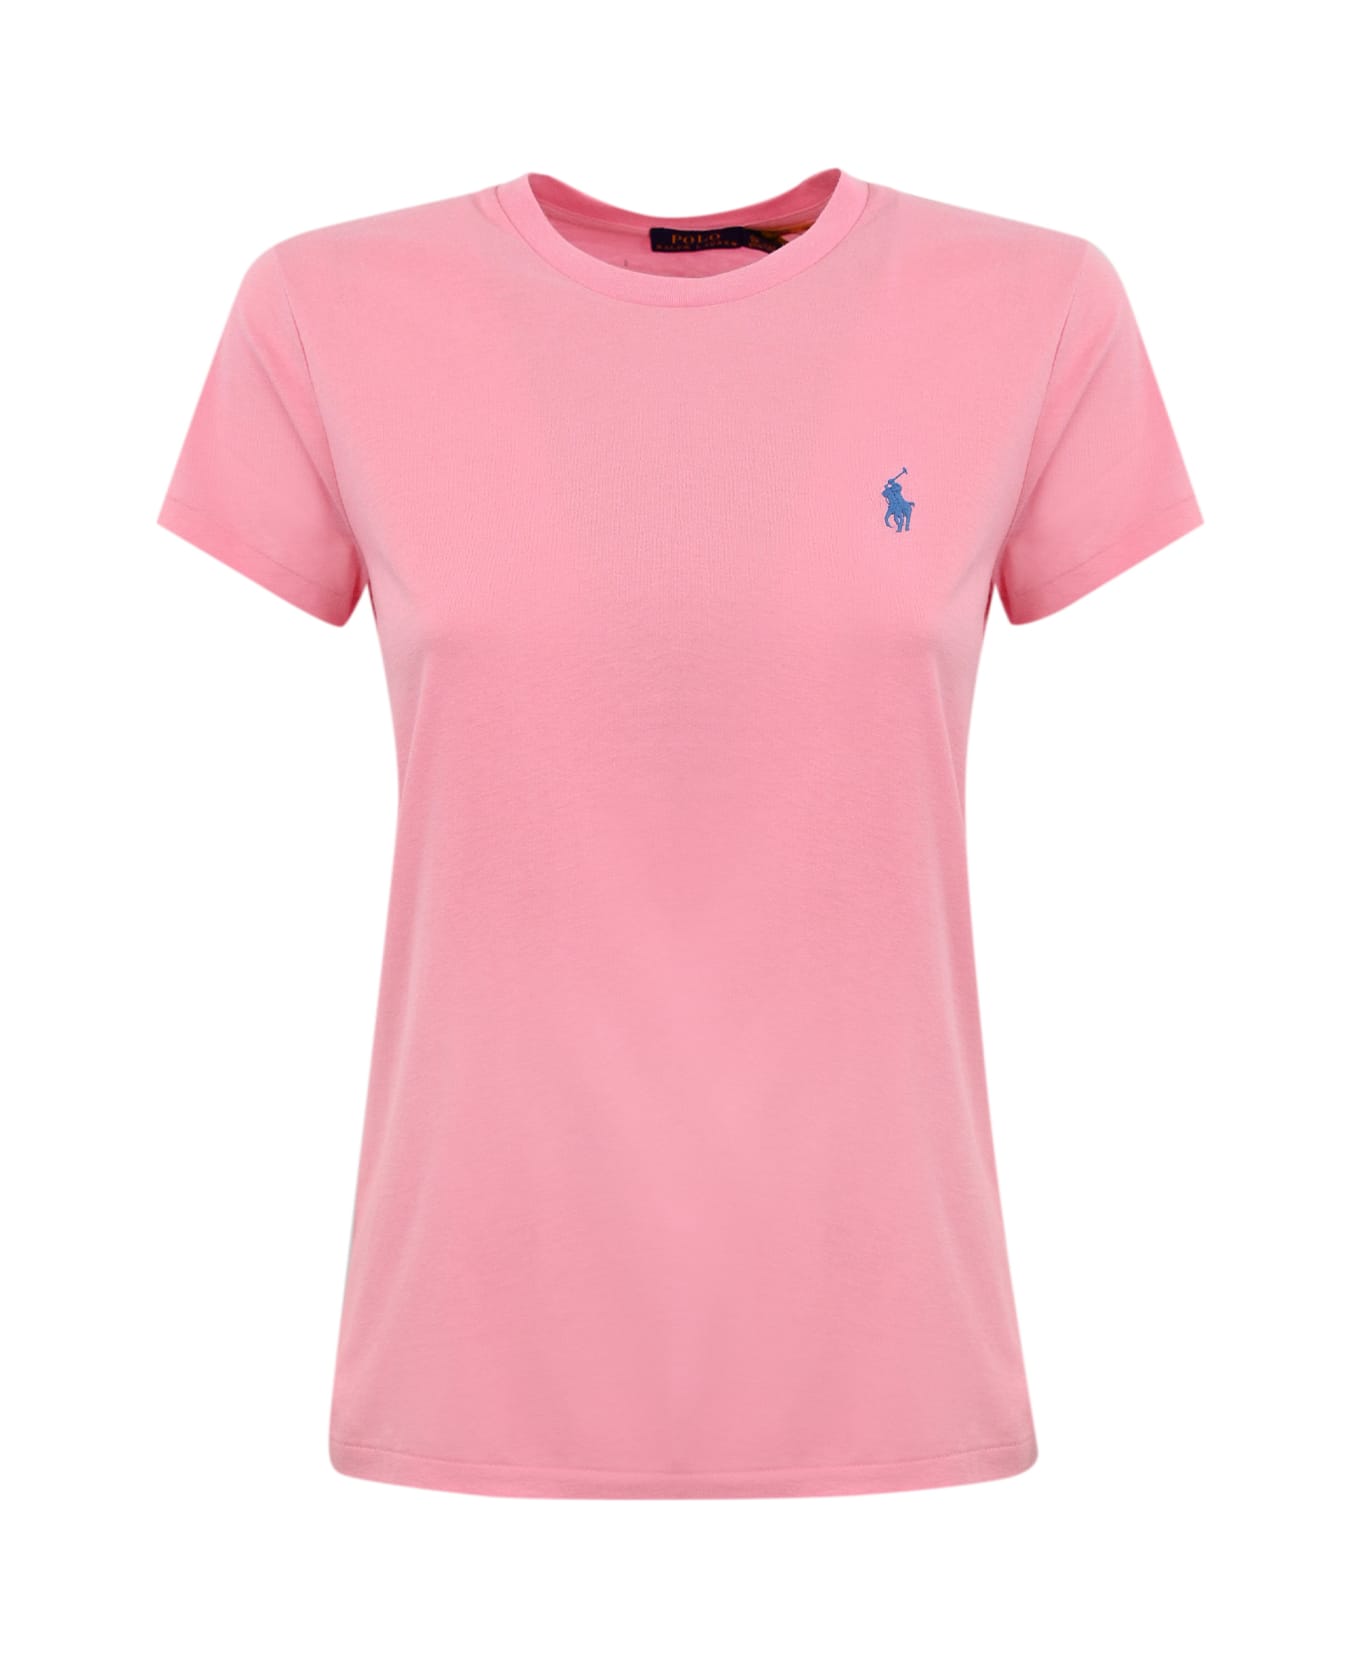 Polo Ralph Lauren T-Shirt - COURSE PINK Tシャツ